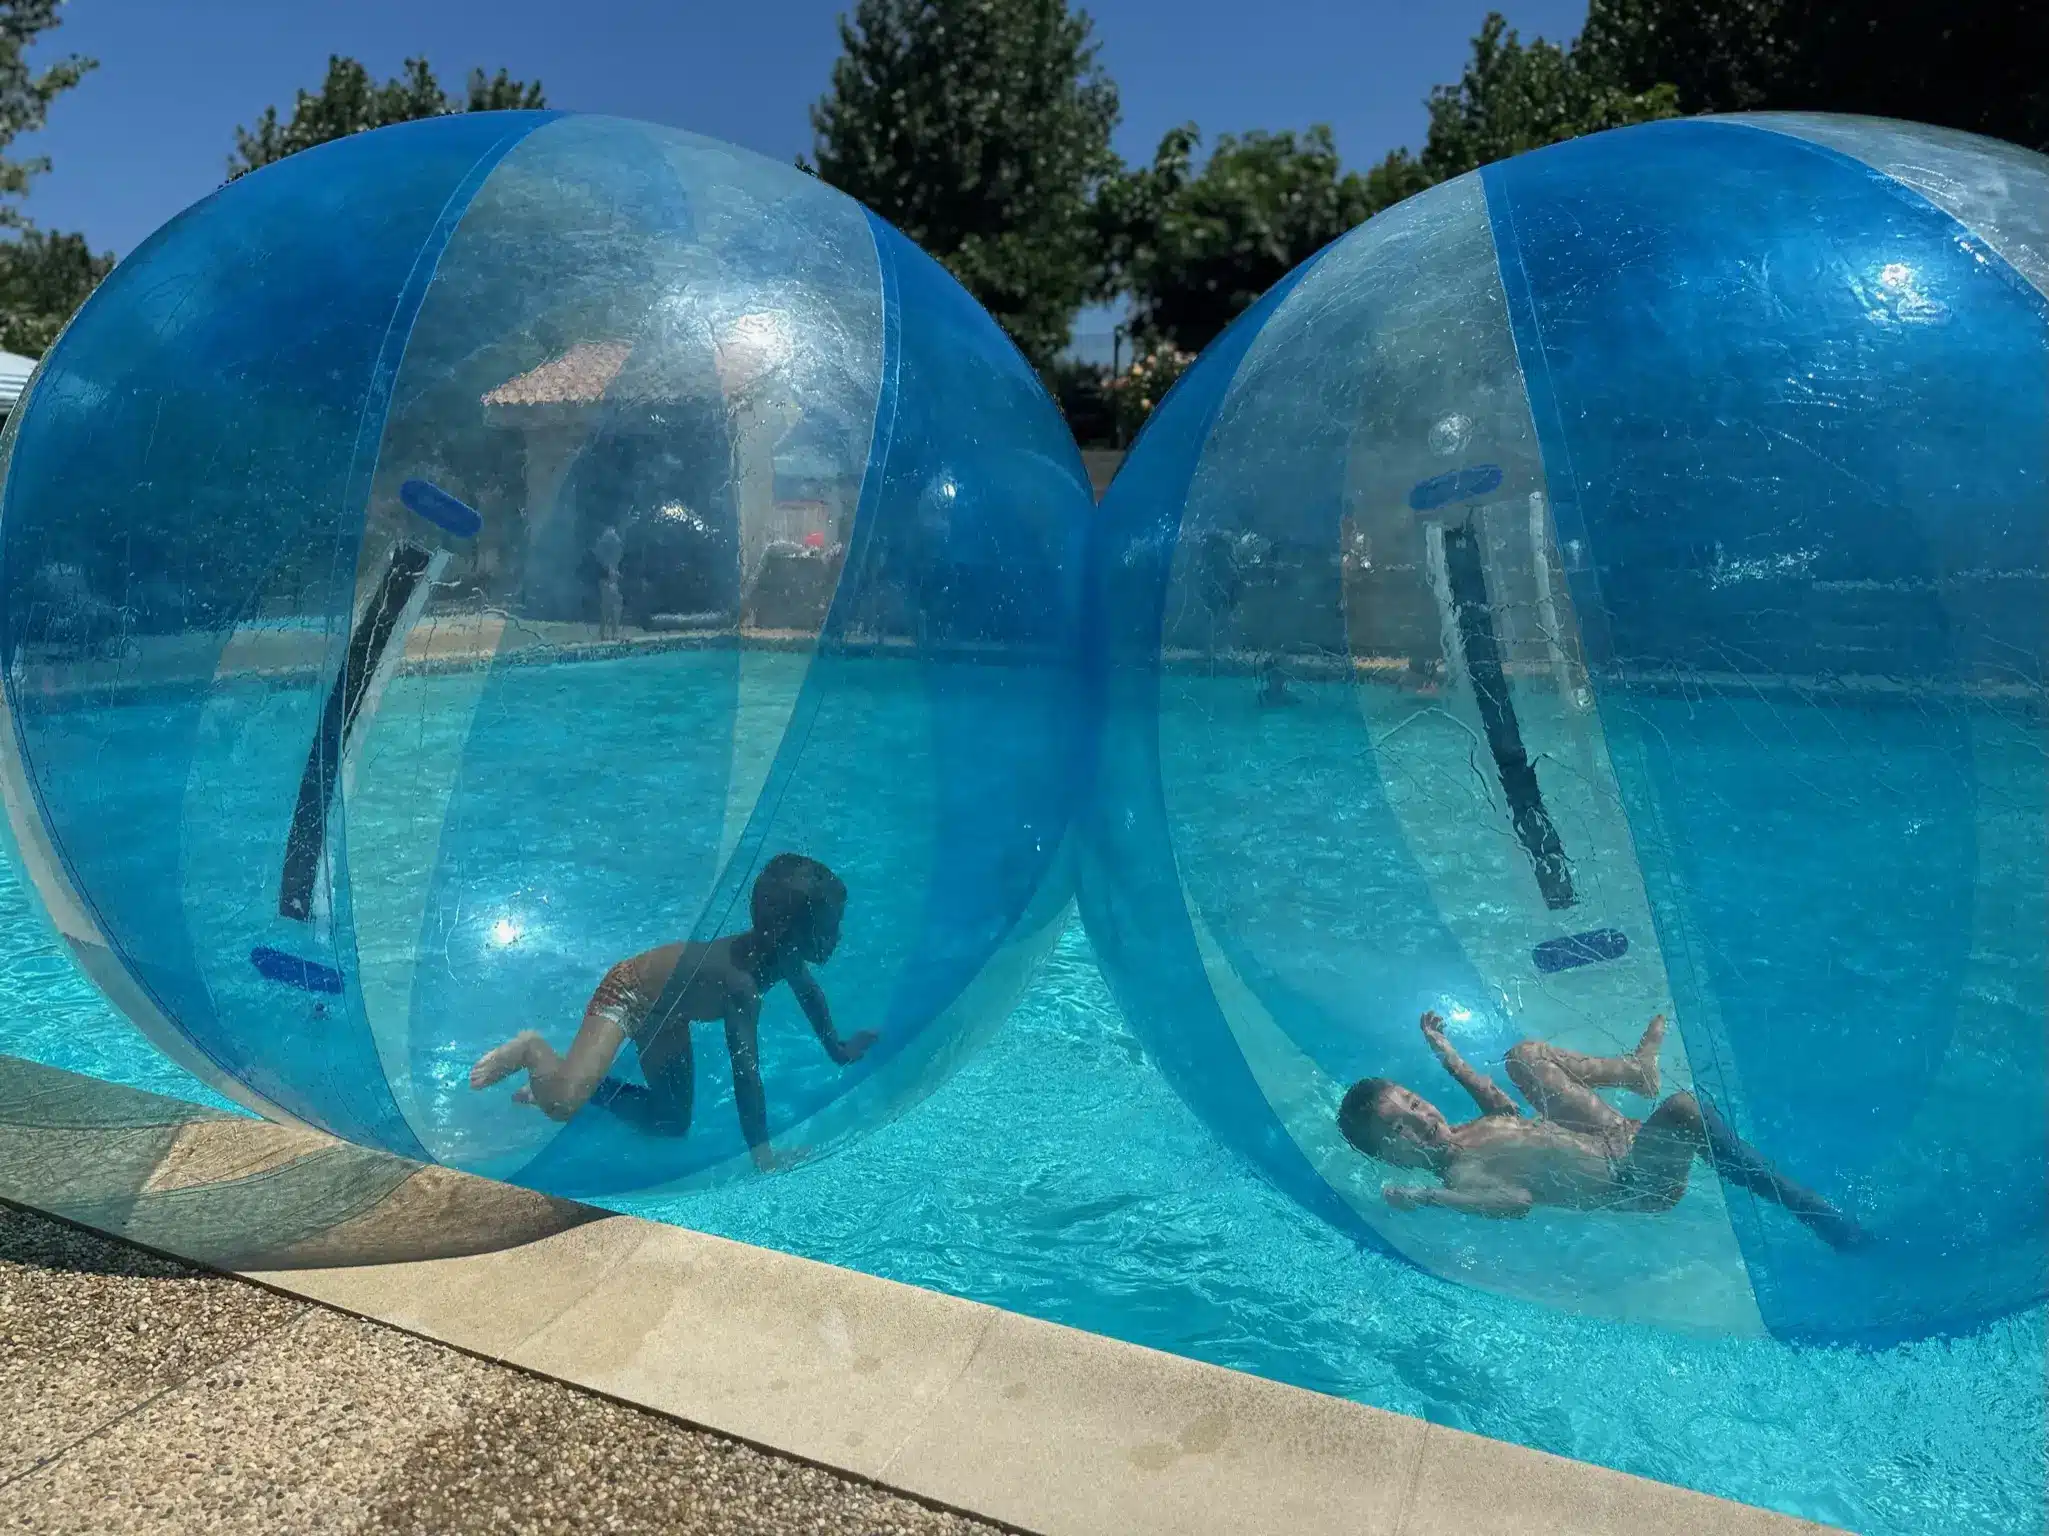 waterball activite aquatique piscine enfants camping pays basque